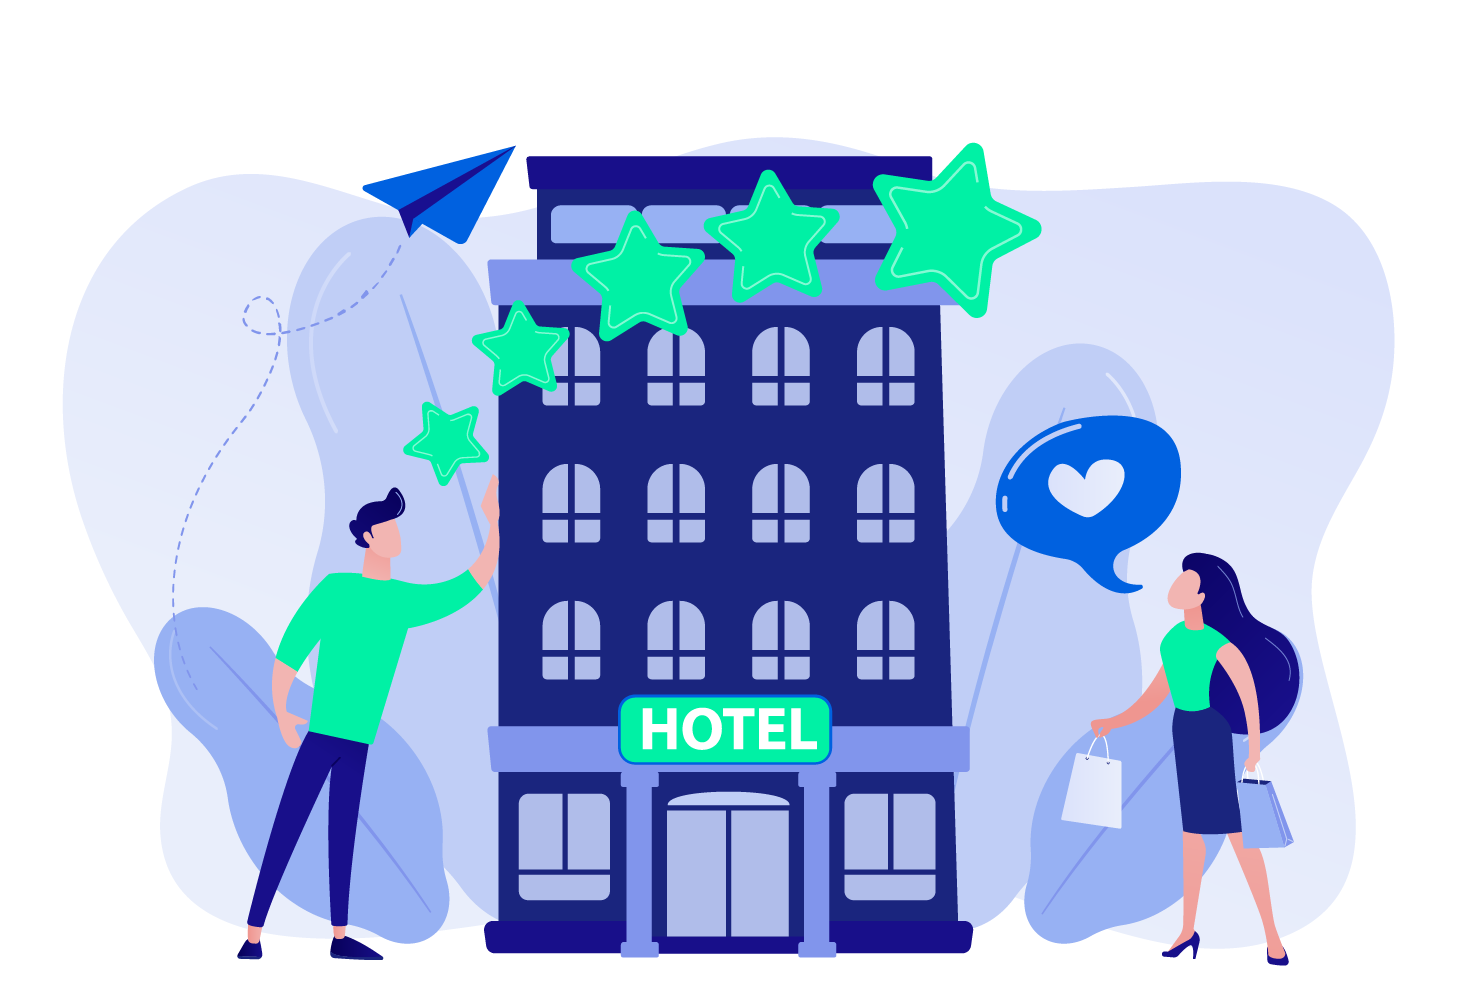 Συμβουλές και παραδείγματα για την αποτελεσματική online προώθηση ξενοδοχείου και άλλων τουριστικών καταλυμάτων.